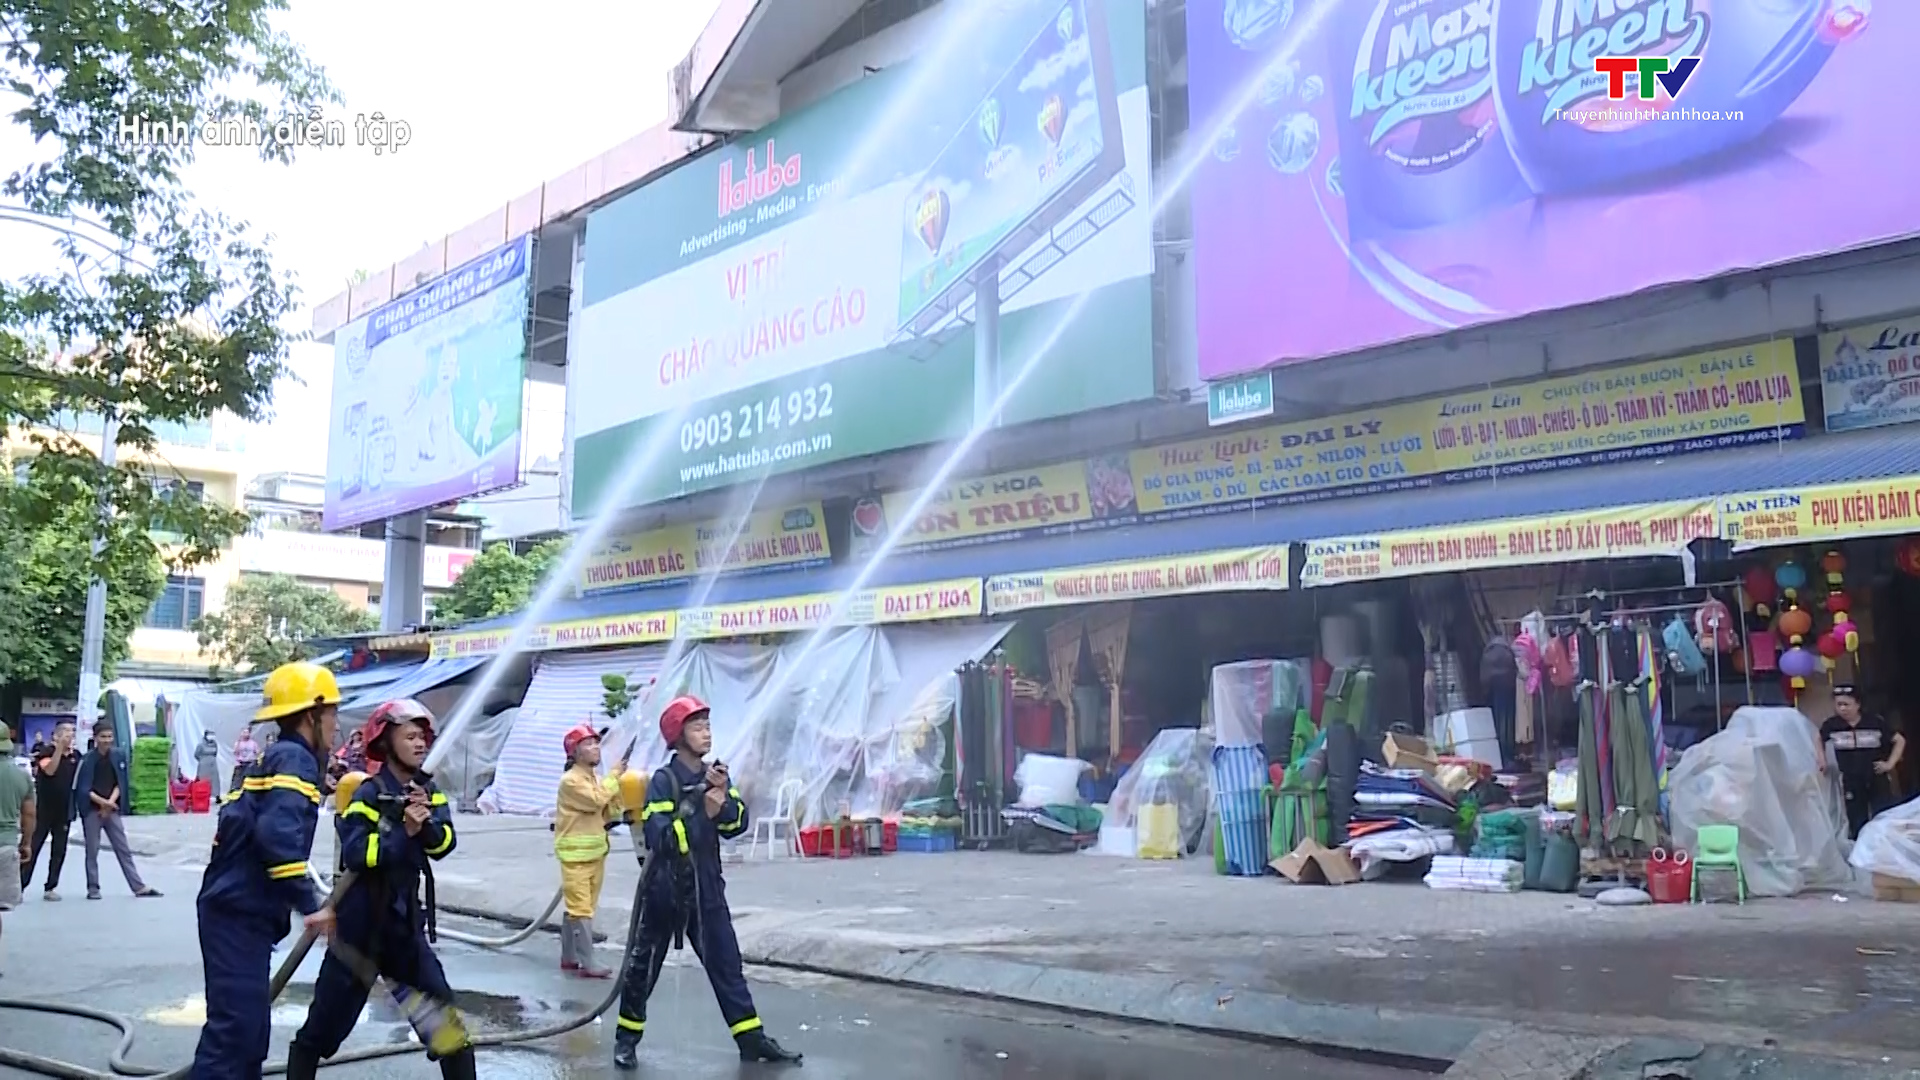 Thực tập phương án chữa cháy, cứu nạn cứu hộ tại chợ Vườn Hoa, thành phố Thanh Hóa - Ảnh 3.